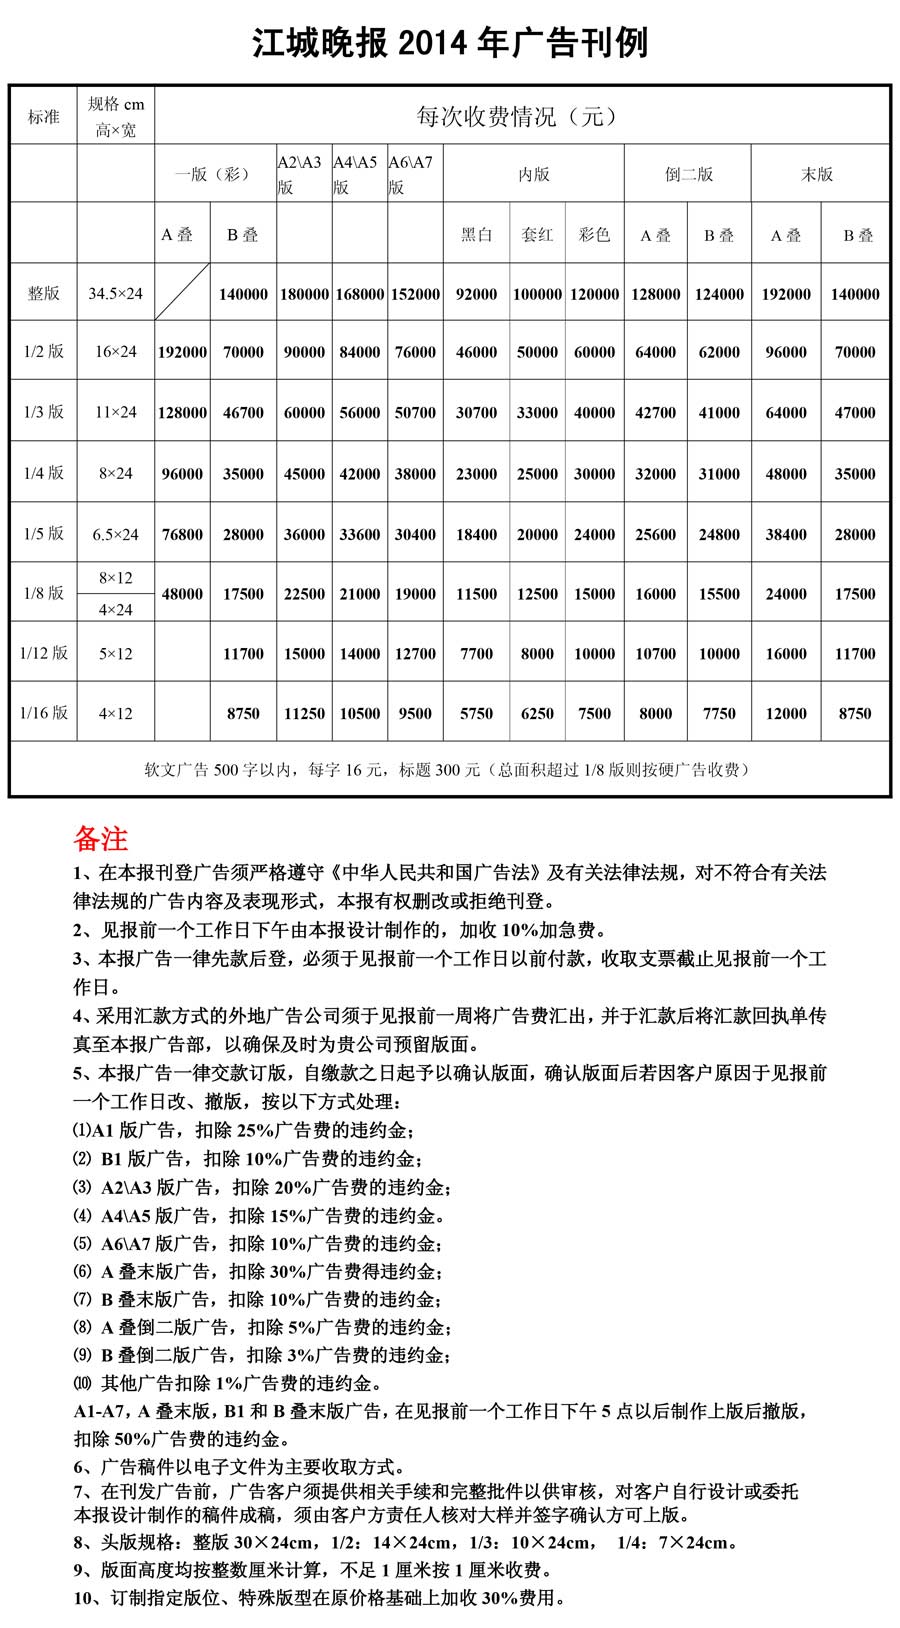 《江城晚报》2014年广告价格